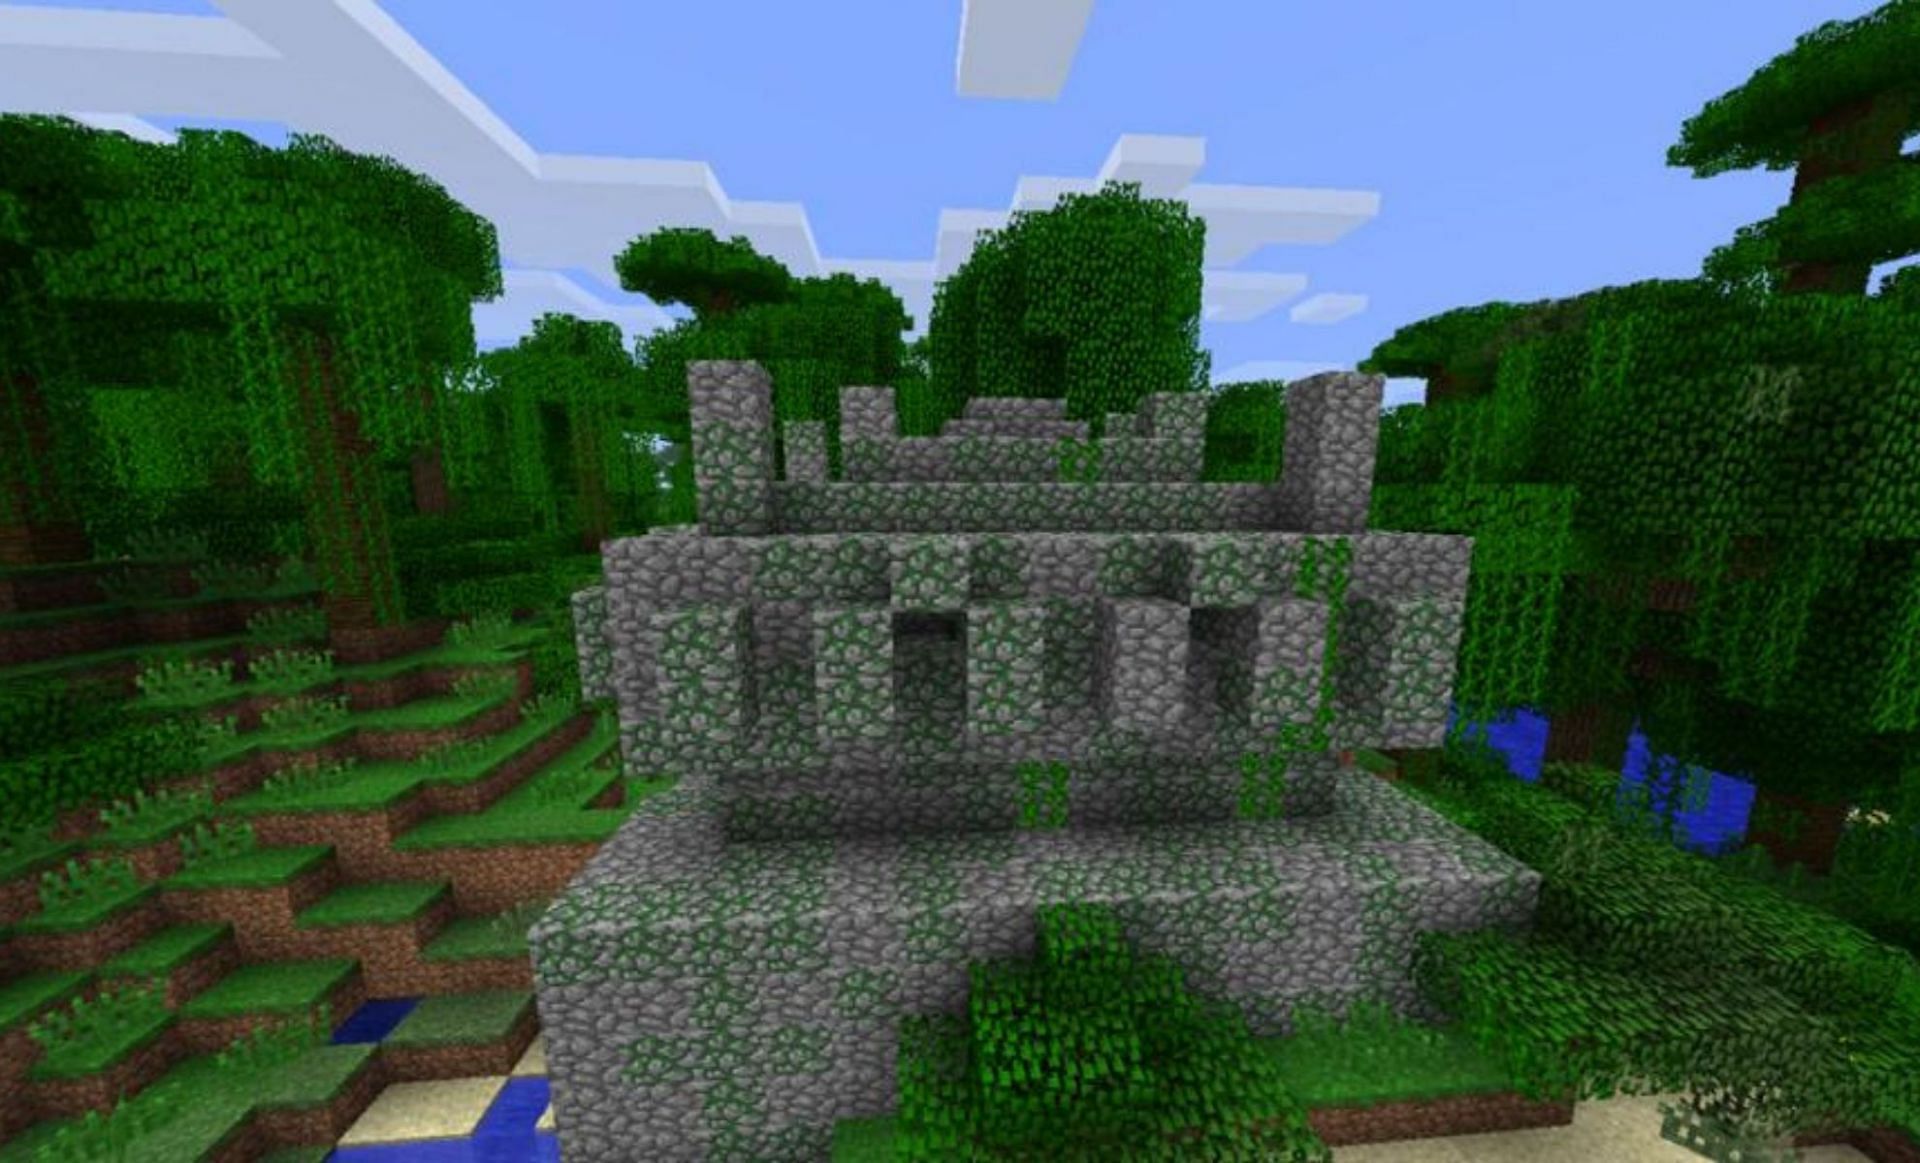 Jungle temple (Image via Minecraft Seeds)